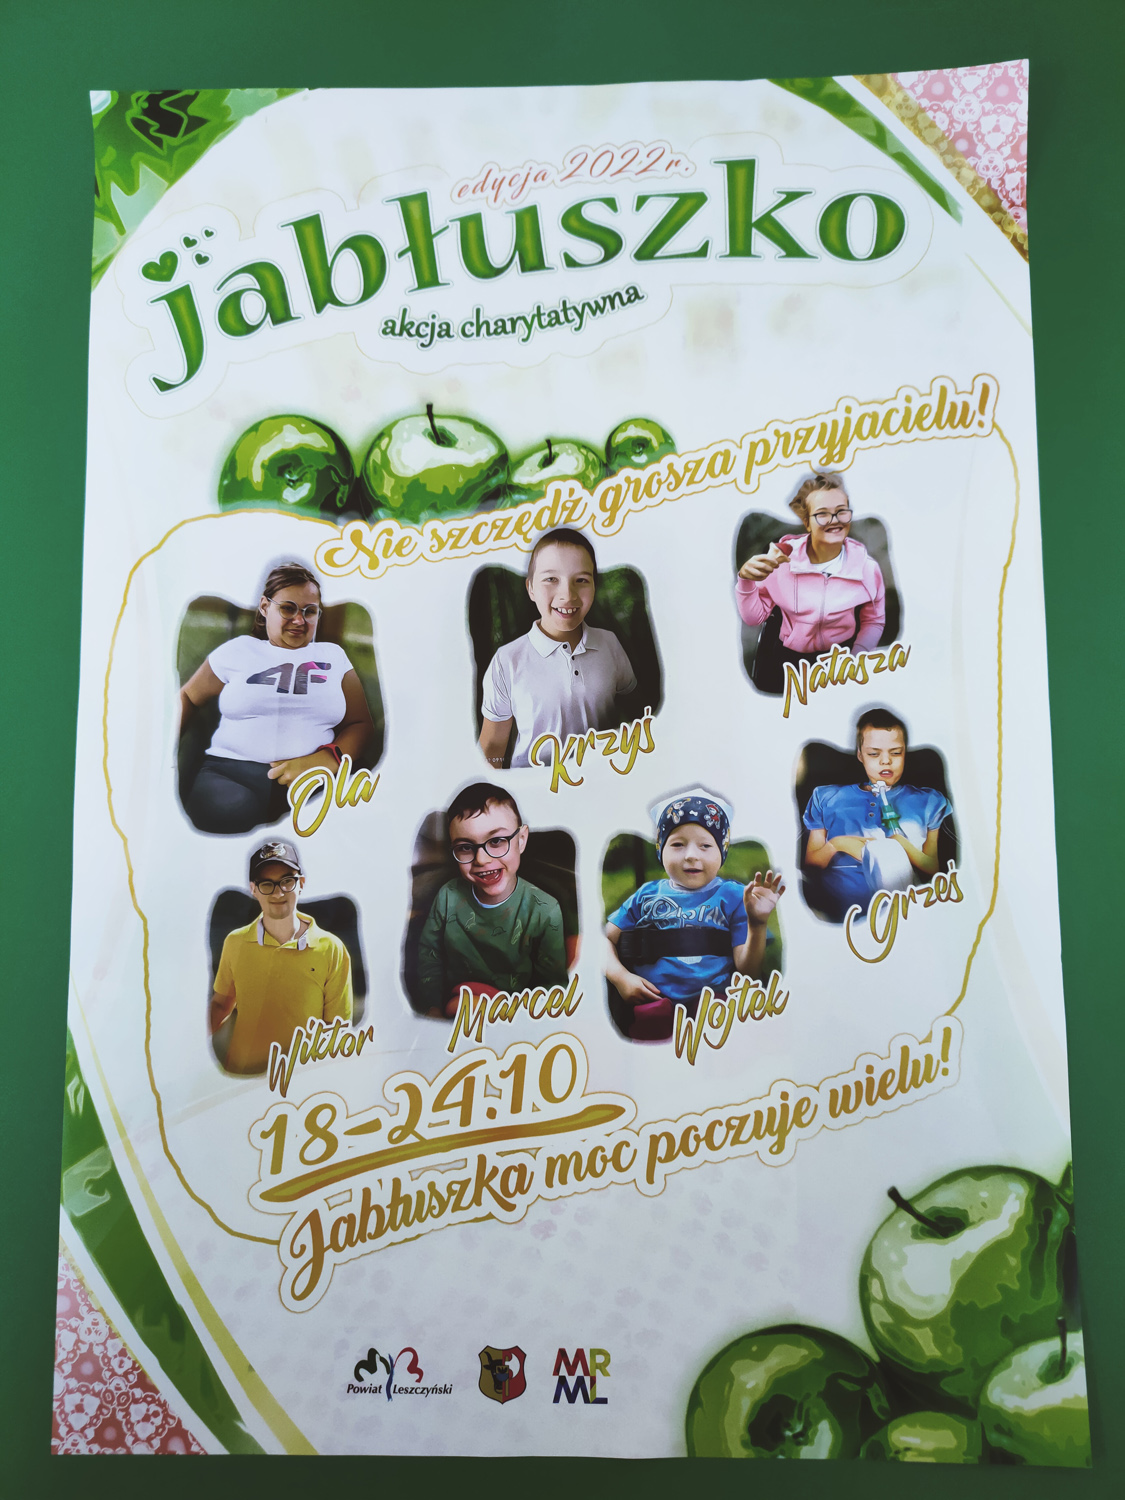 Plakat akcji charytatywnej "Jabłuszko" edycja 2022 r.